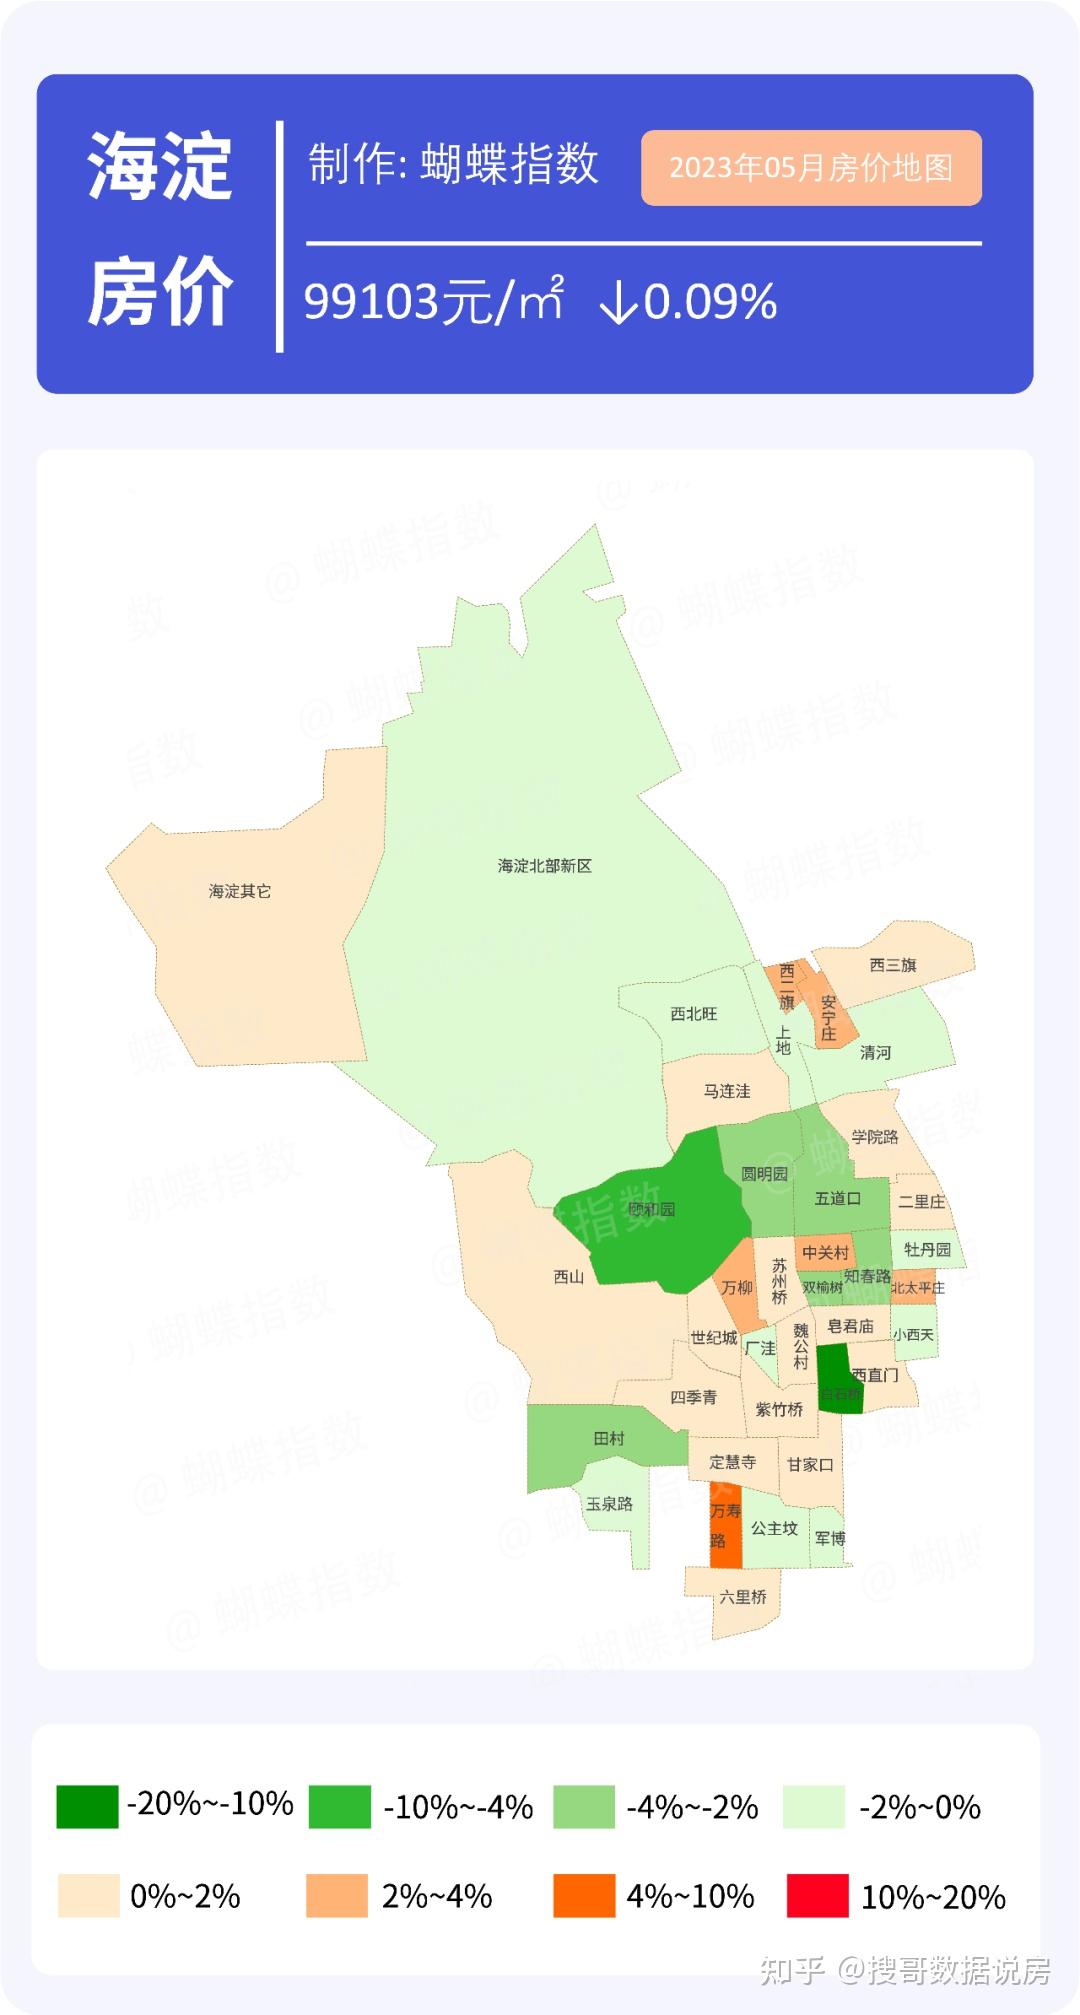 北京房价地图:11个城区,229个商圈,房价数据都在这了! 